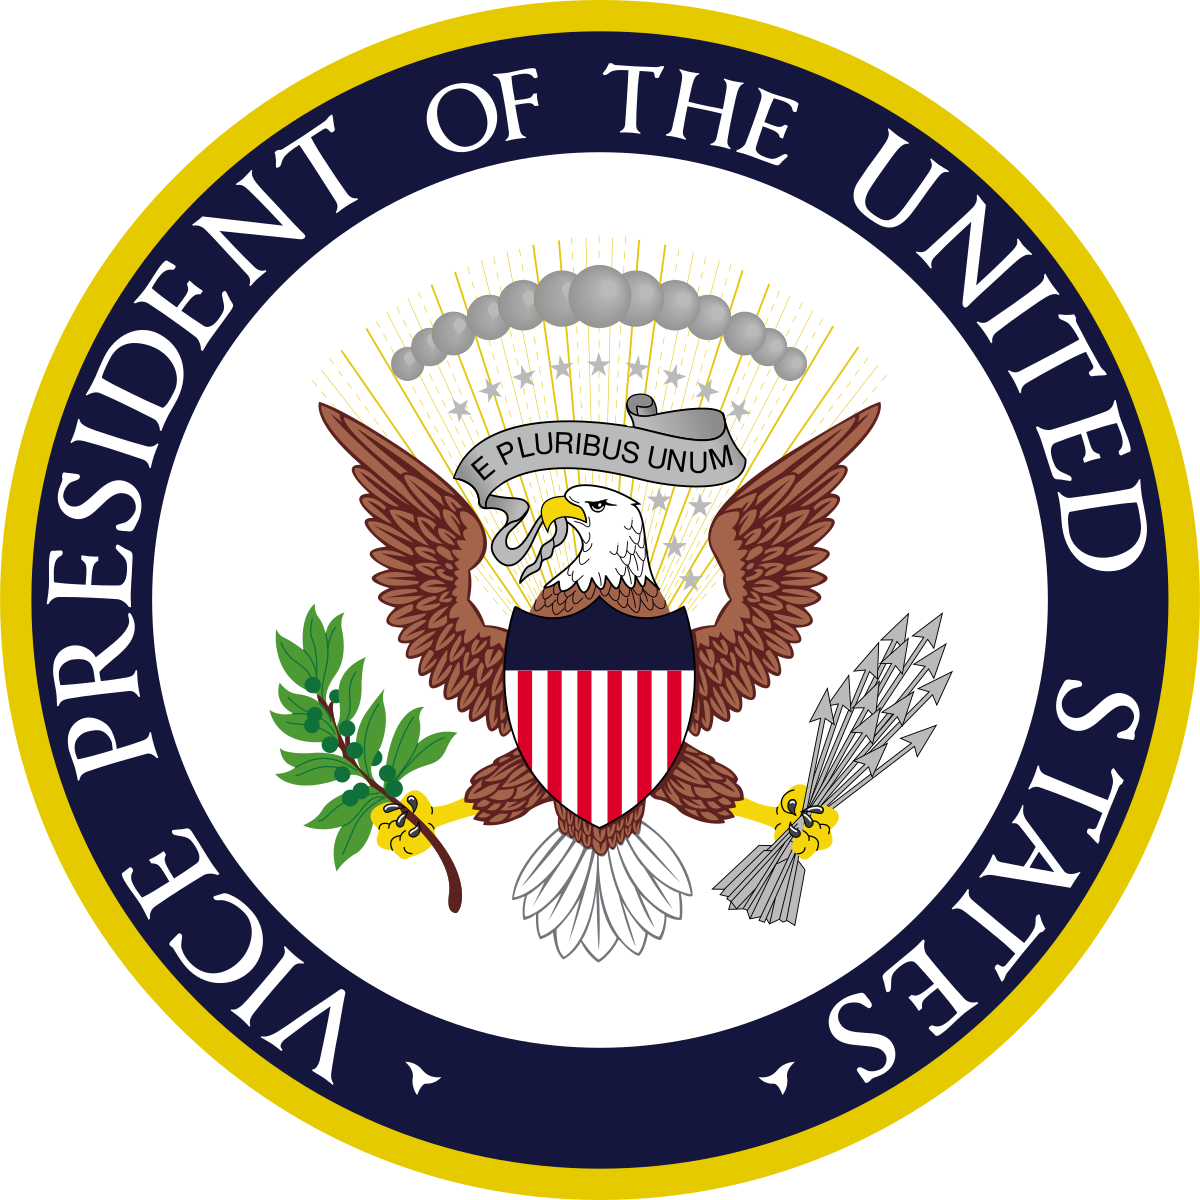 Emblema Nacional dos EUA